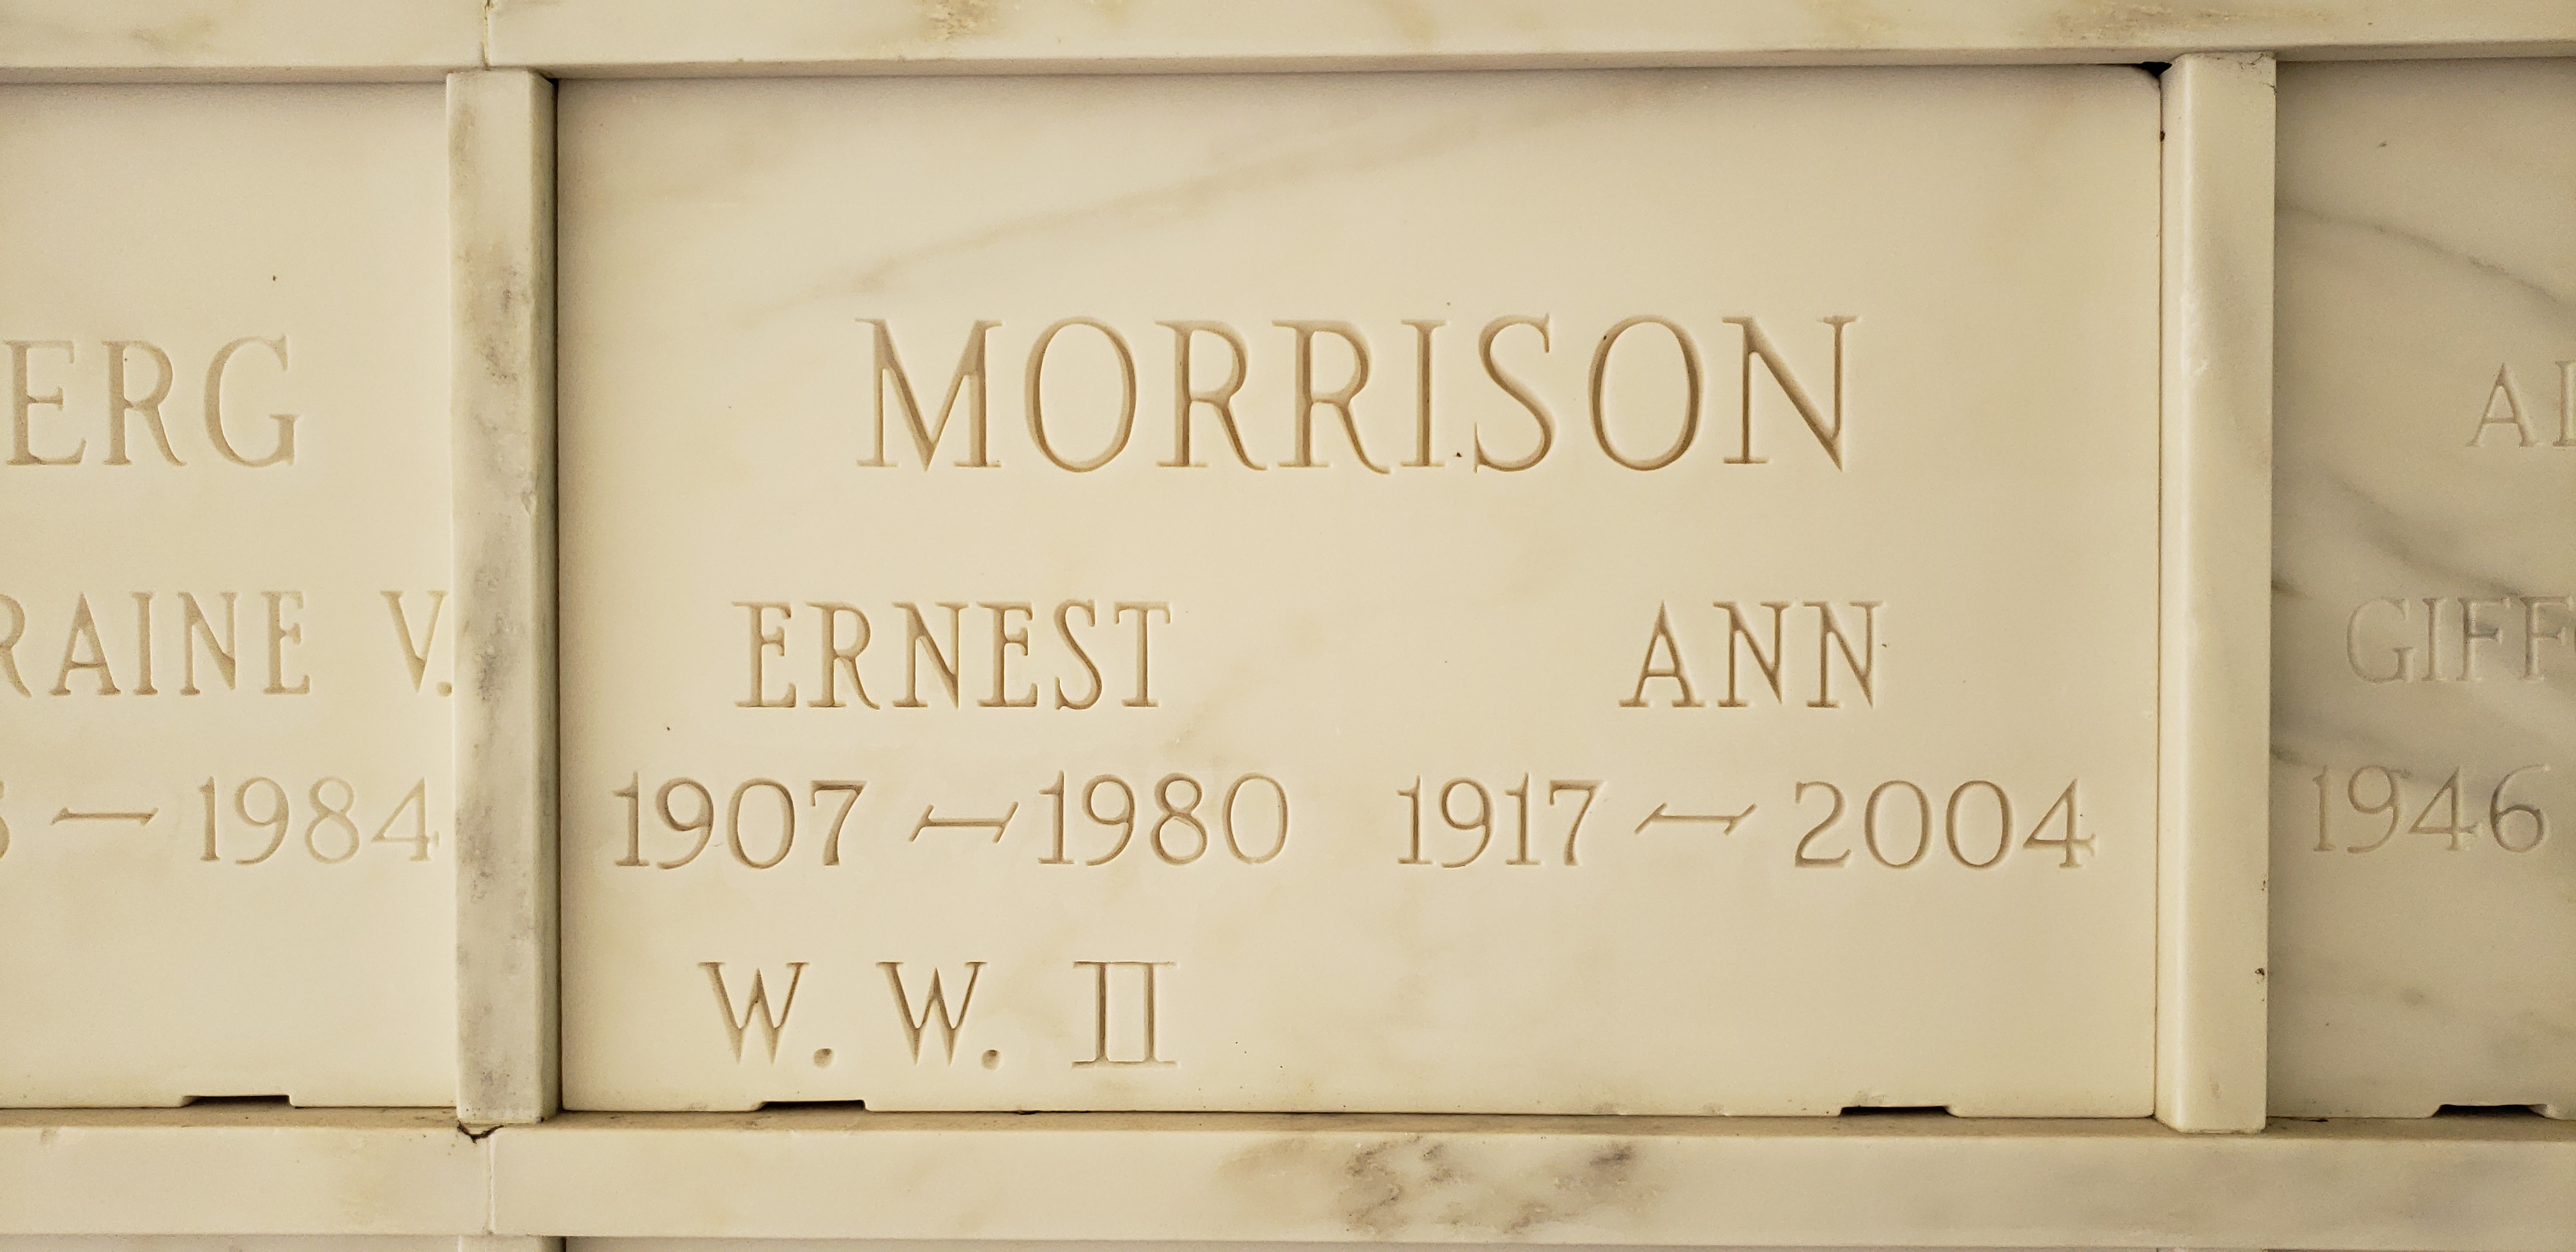 Ernest Morrison